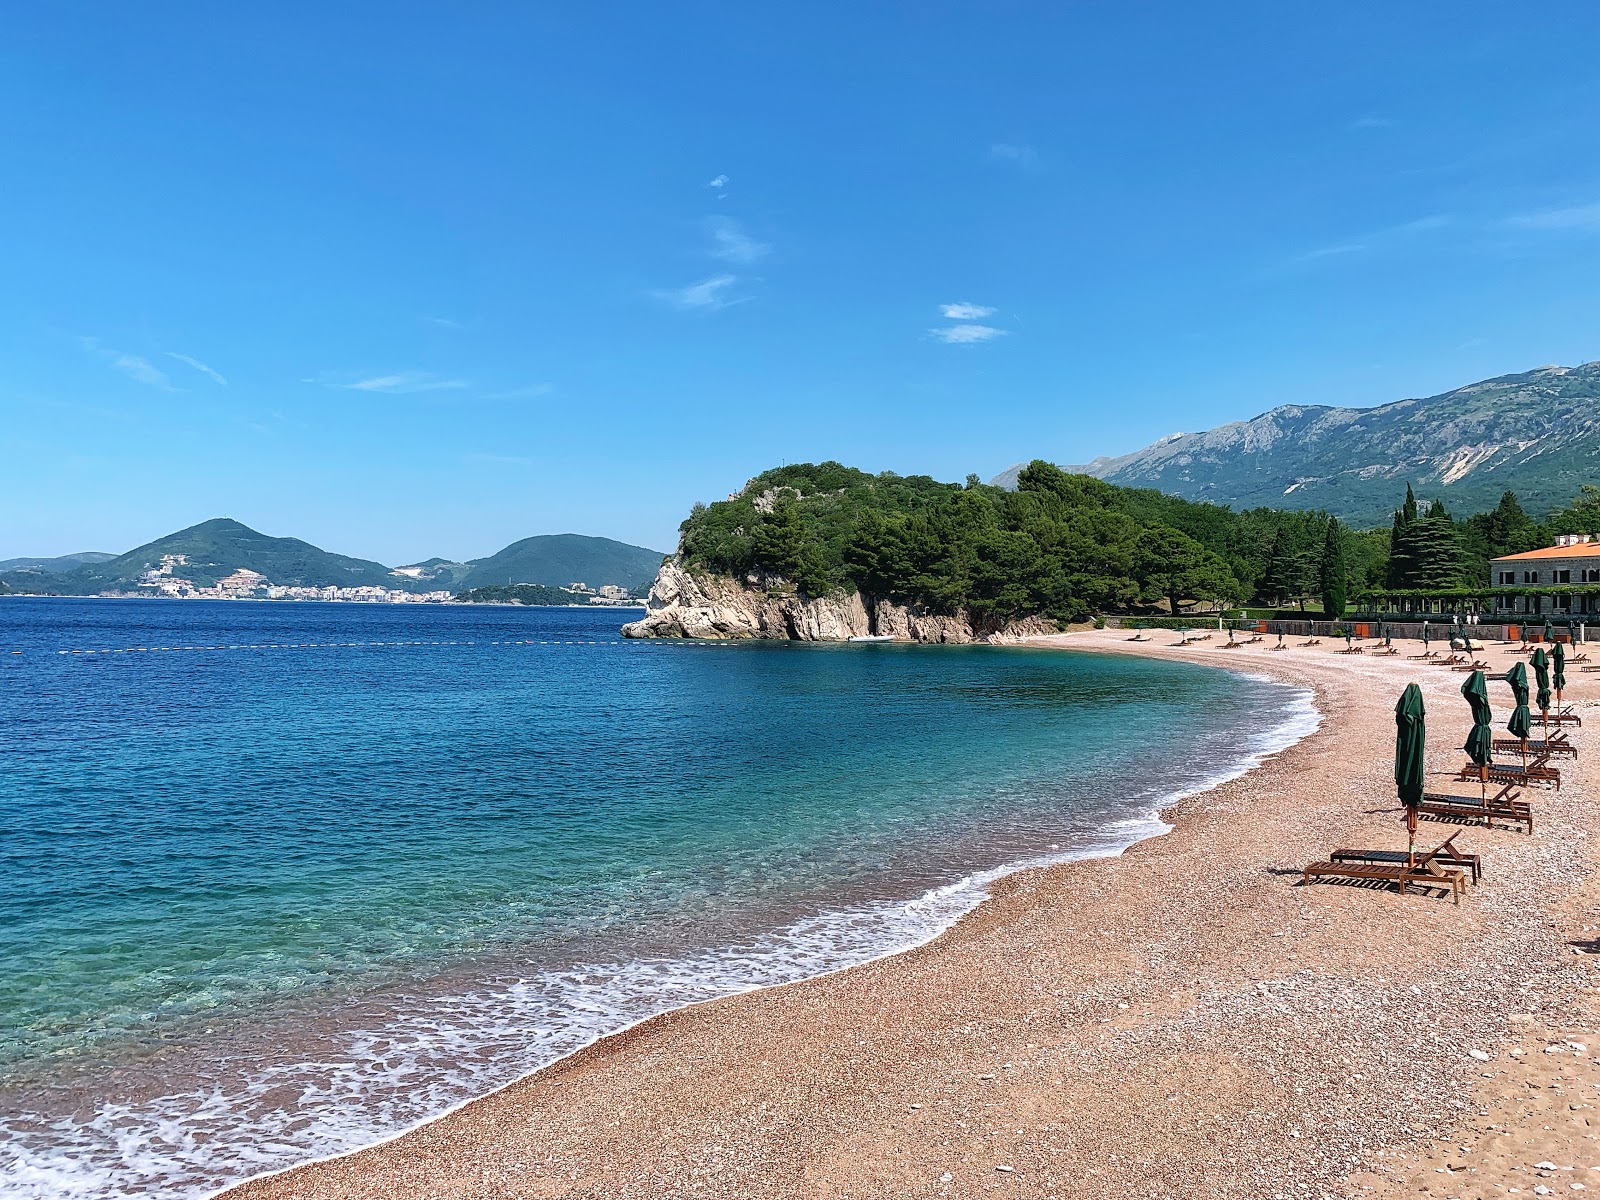 Milocer Plajı'in fotoğrafı siyah kum ve çakıl yüzey ile